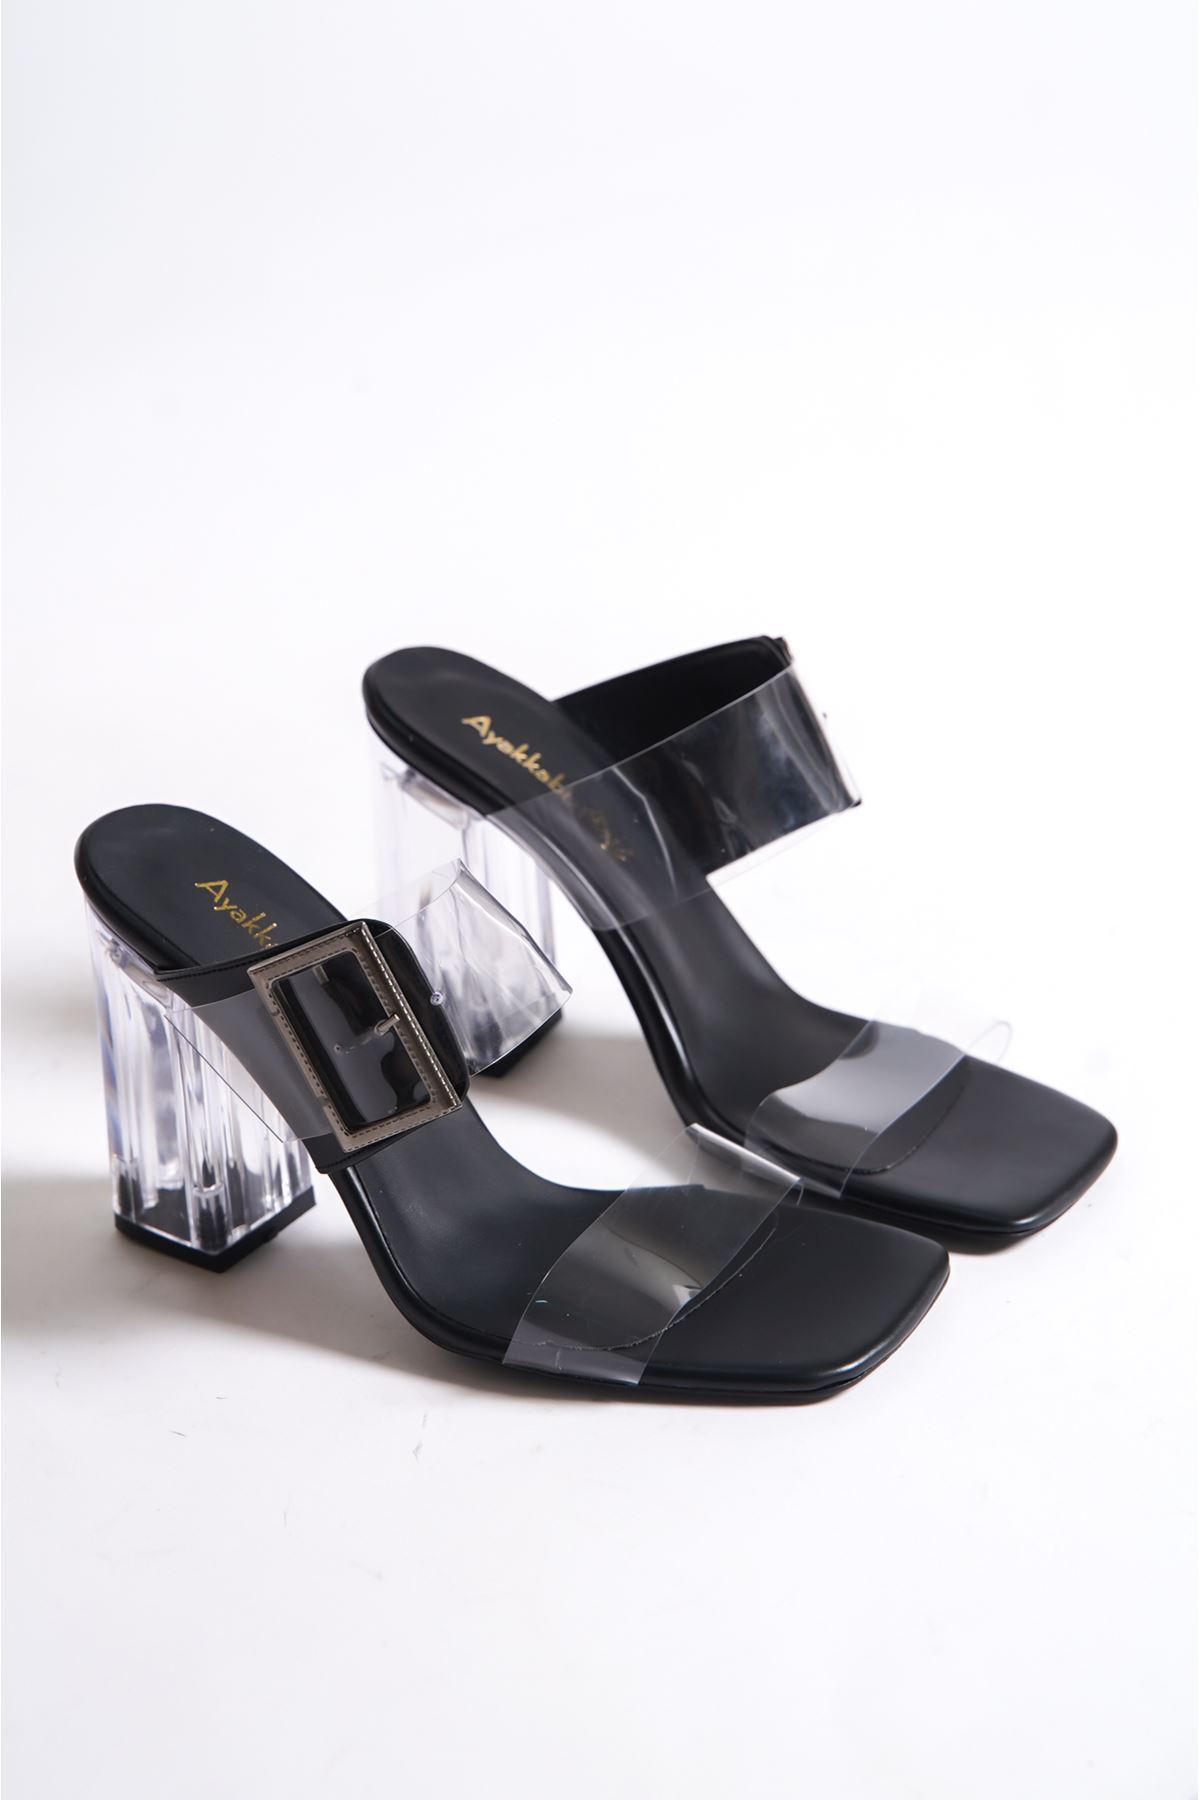 Deborah Siyah Cilt Tokalı Şeffaf Topuklu Kadın Ayakkabı